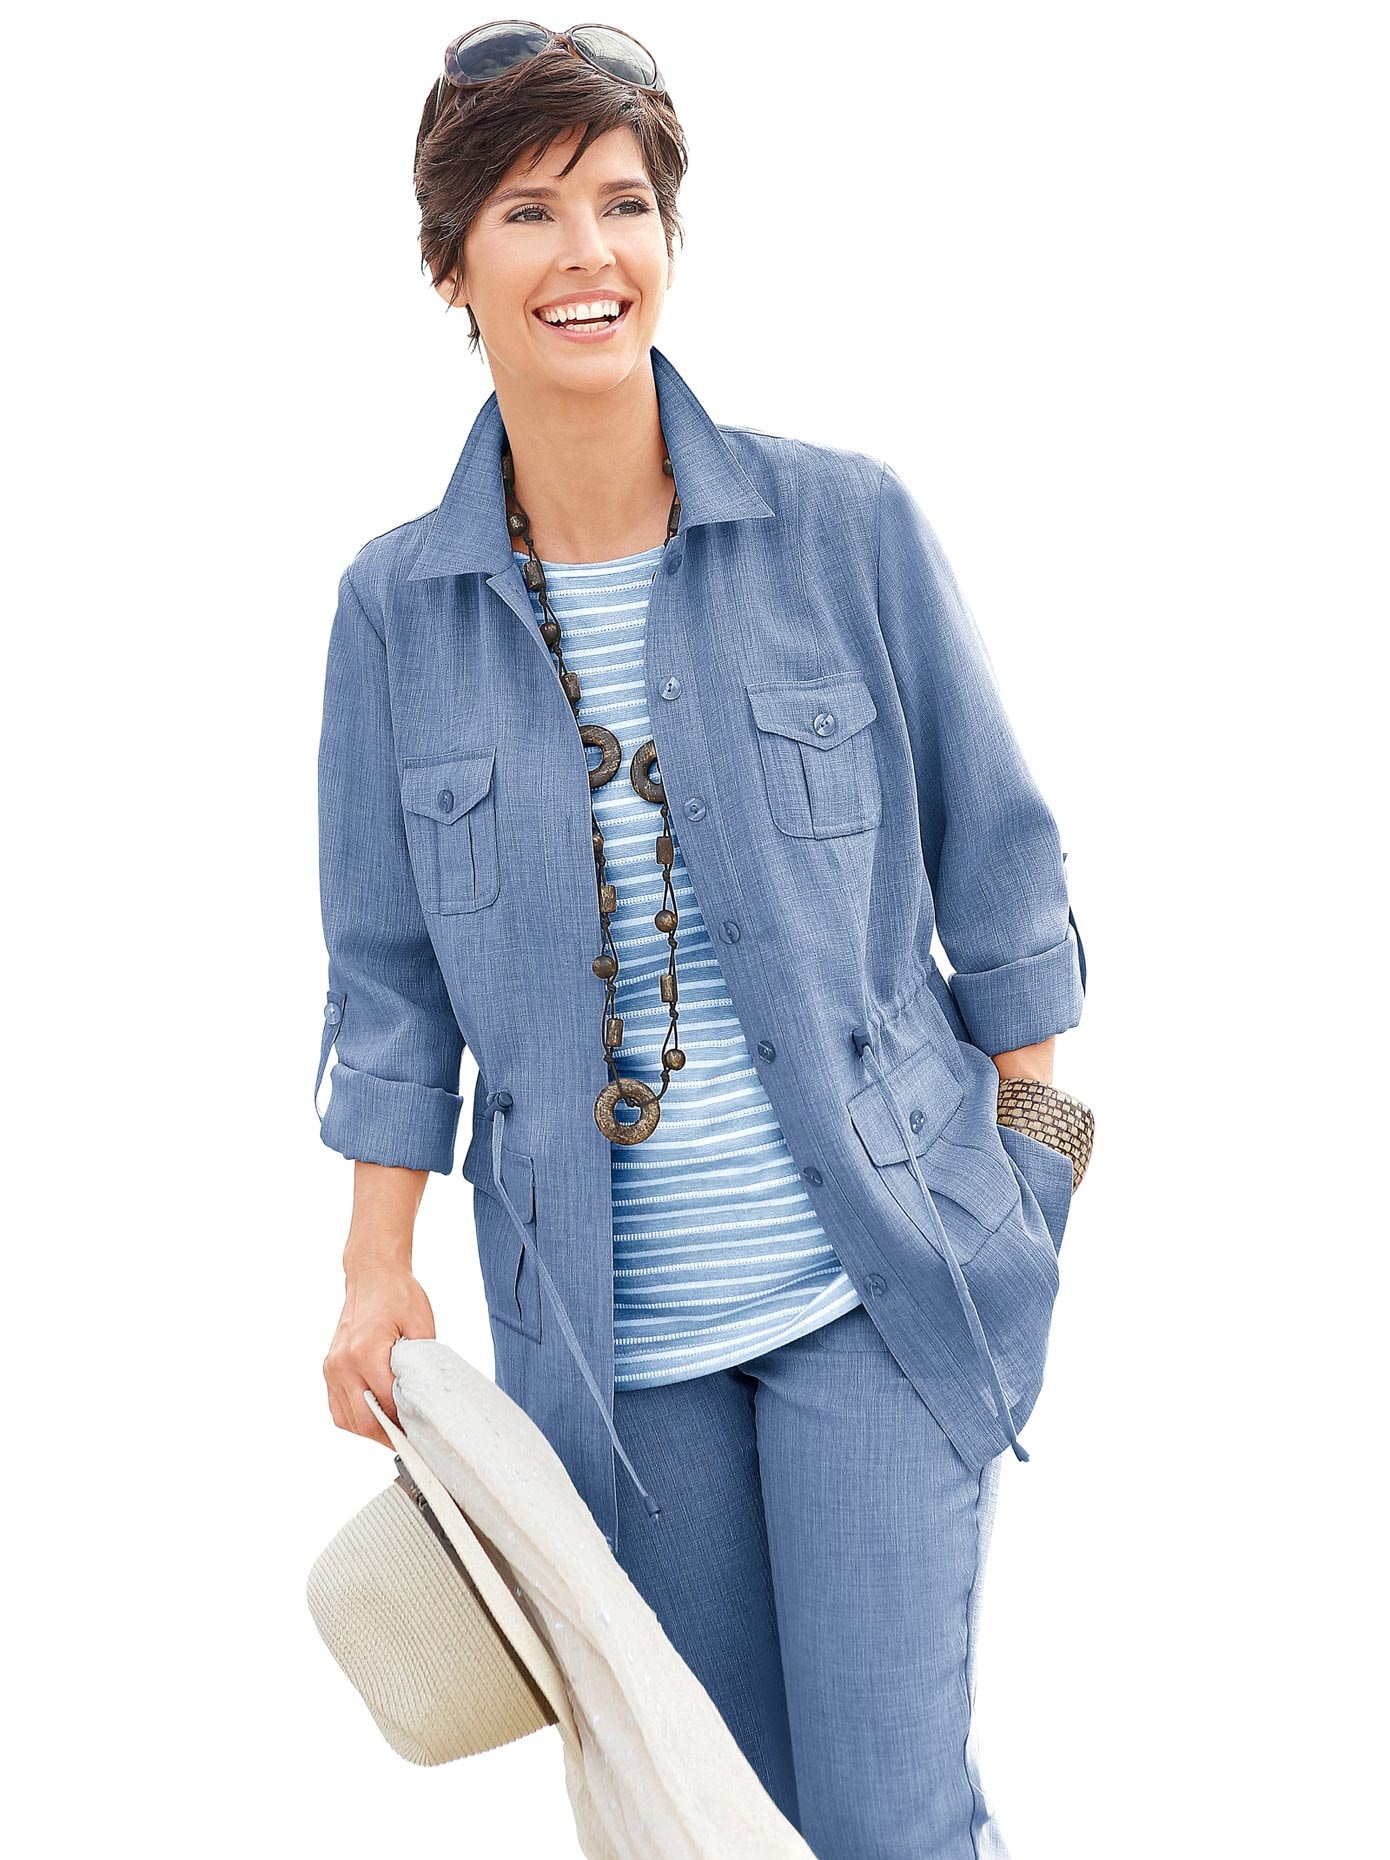 Модели джинсовых курток для женщин 50 лет фото